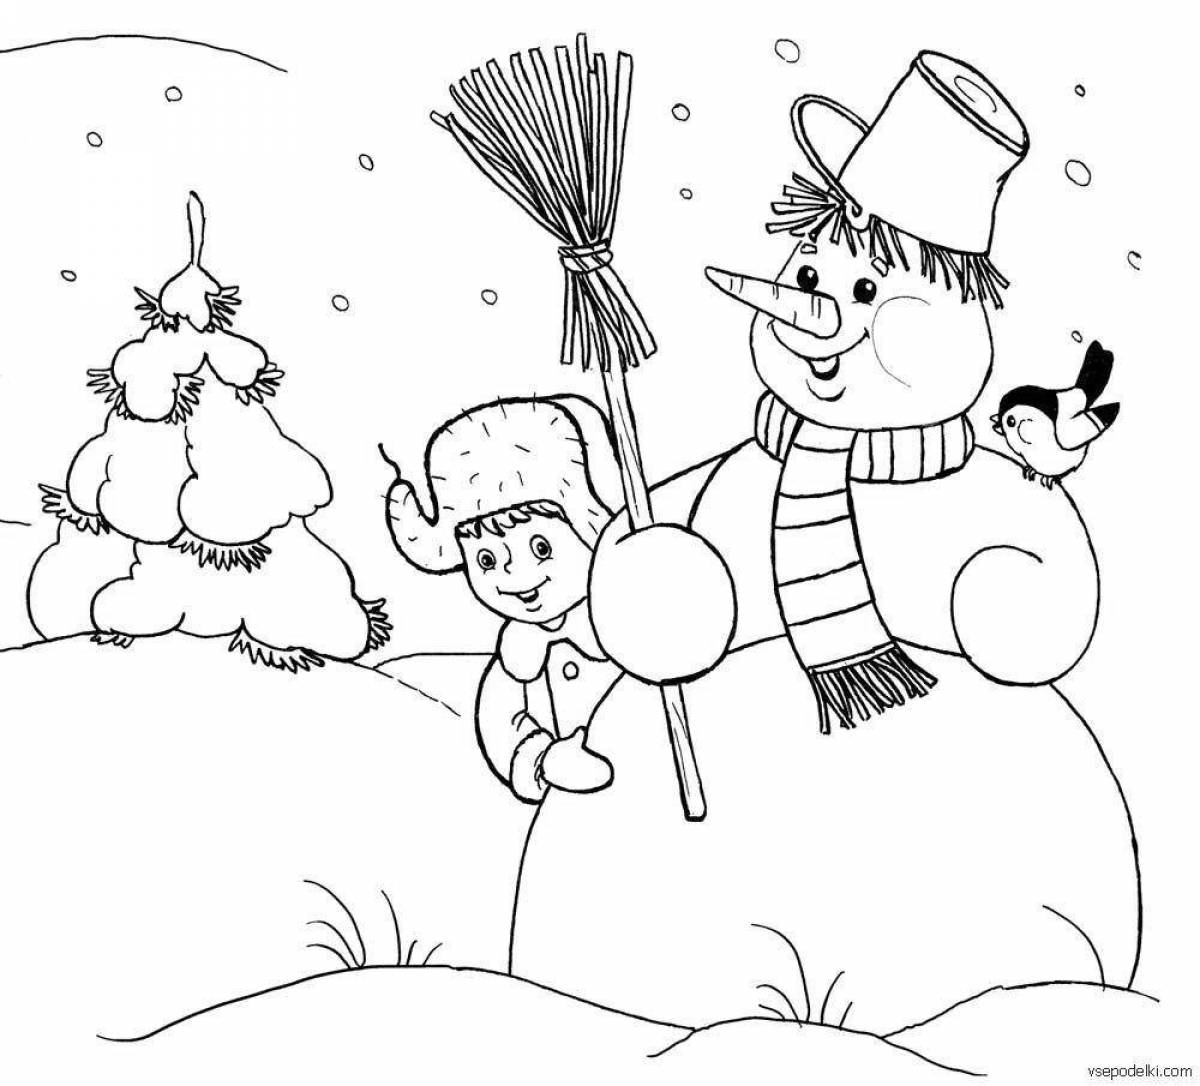 Радостная раскраска снеговик для детей 5 6